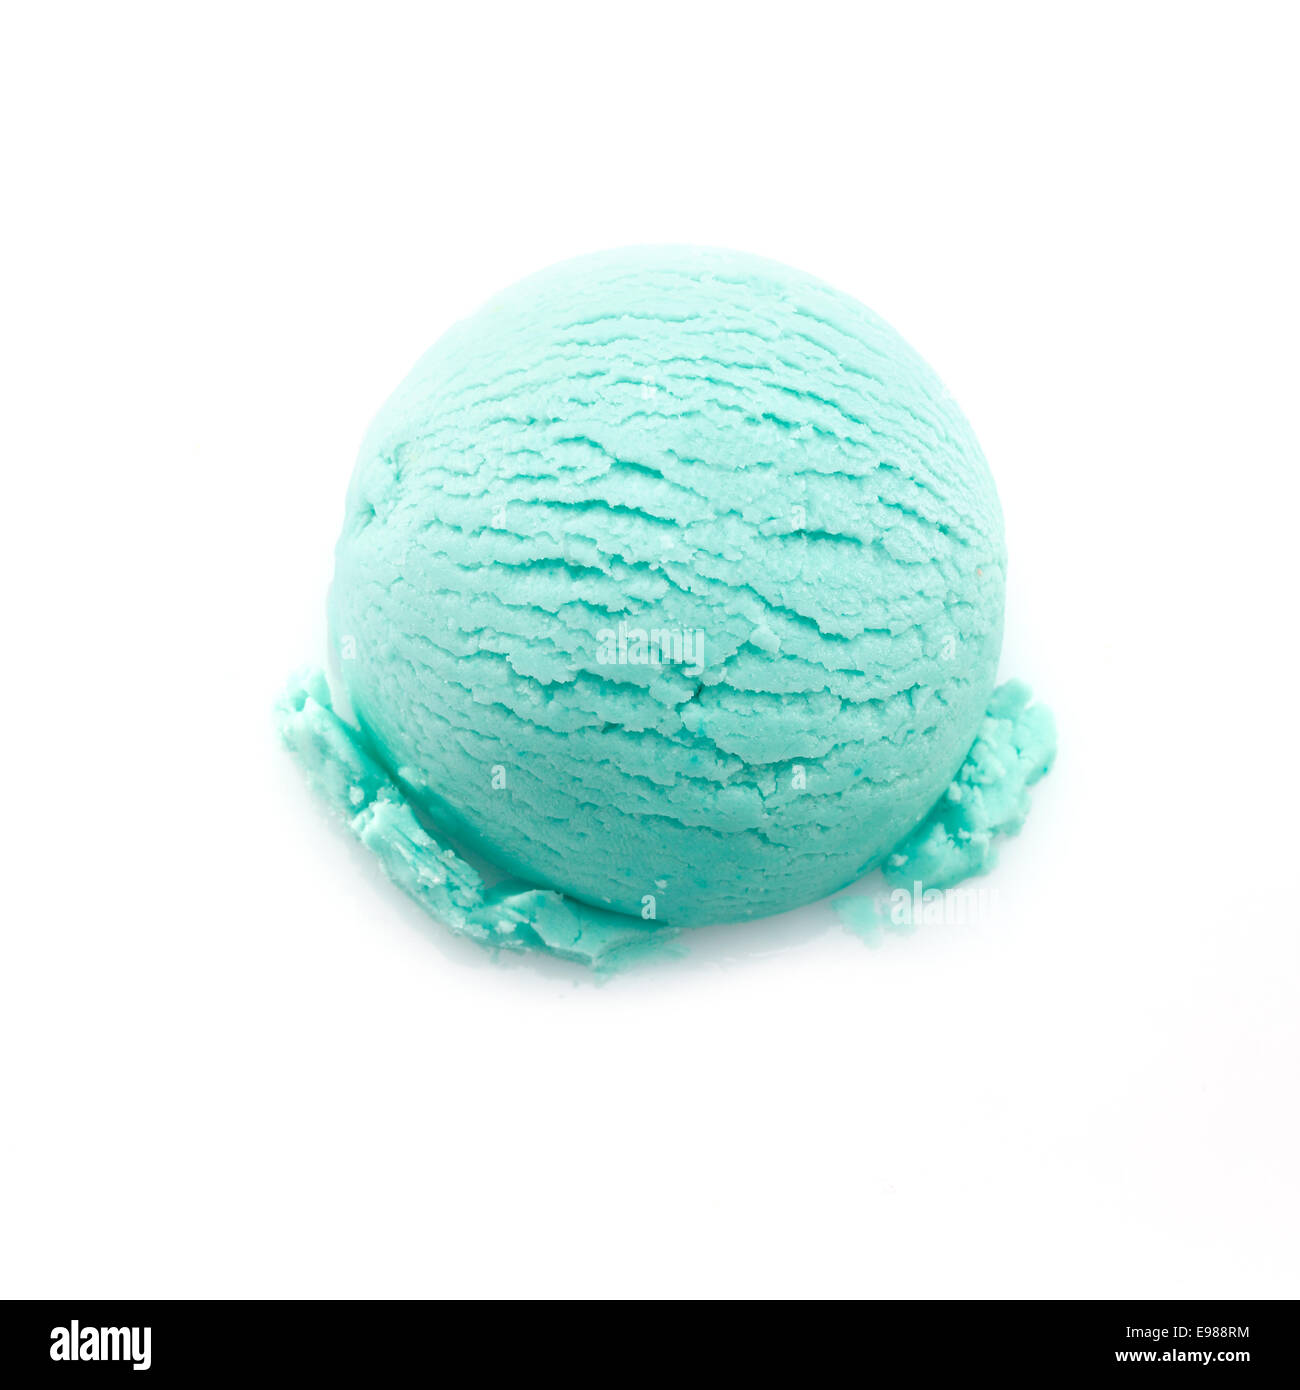 High angle view sur une boule de glace turquoise isolé sur fond blanc Banque D'Images